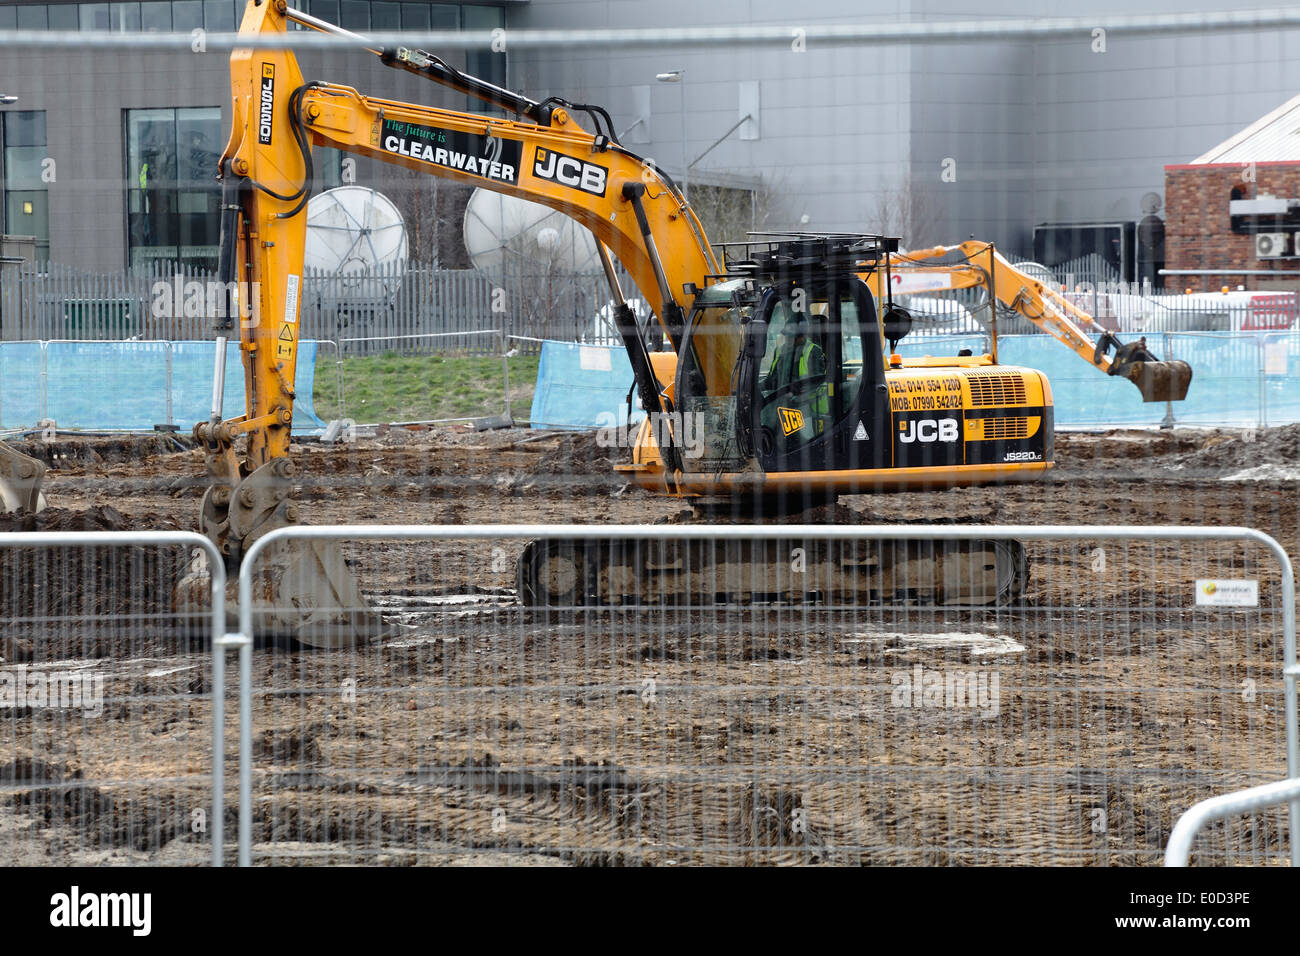 Scavatrice meccanica JCB che scavava terra in un cantiere, Scozia, Regno Unito Foto Stock